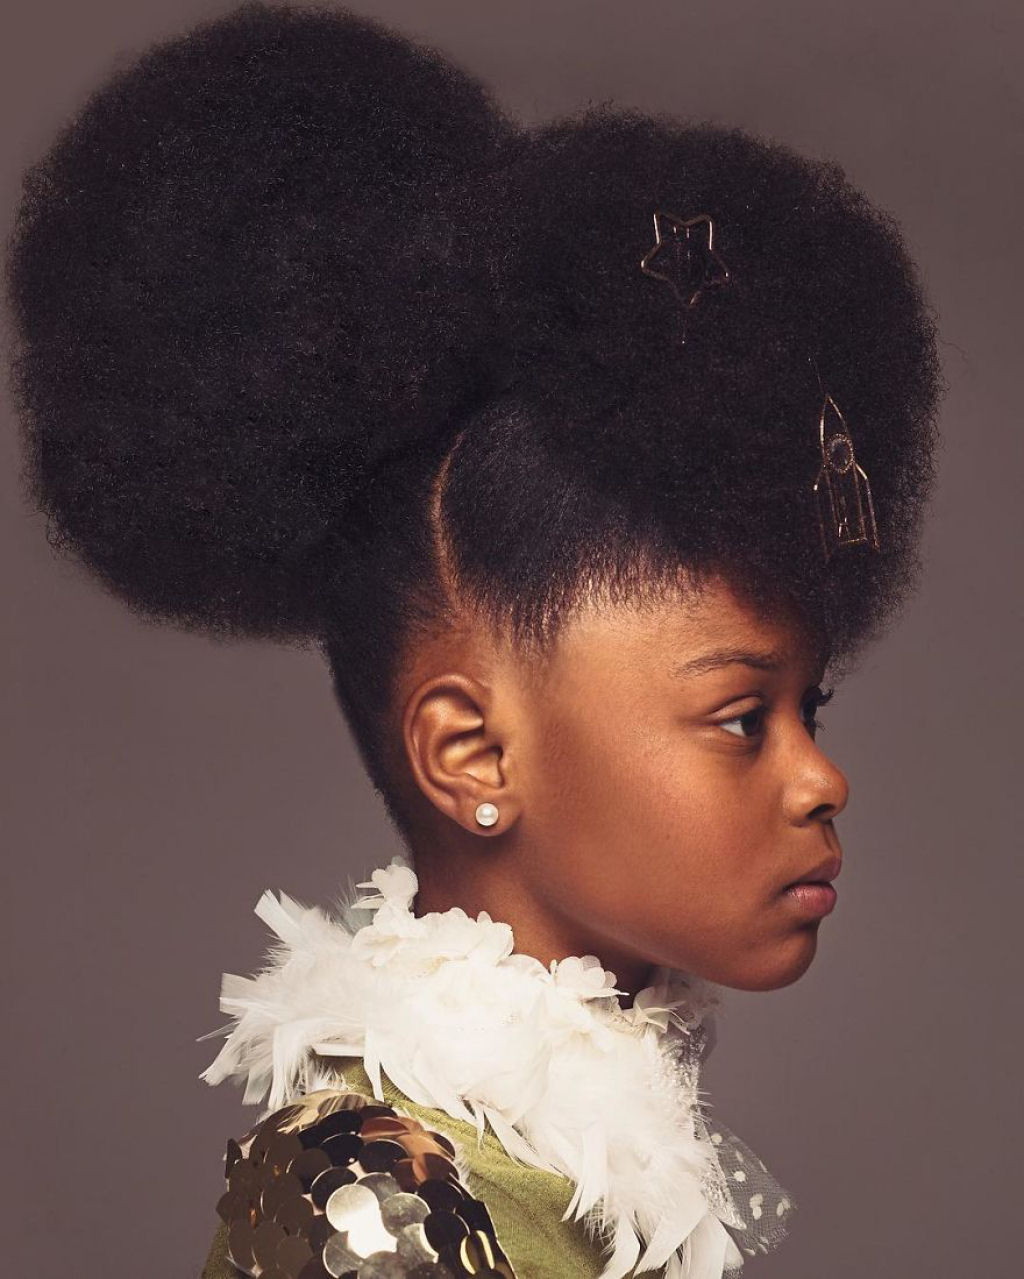 Retratos inspirados destacam a beleza do cabelo crespo para que outras garotas parem de escond-lo 06